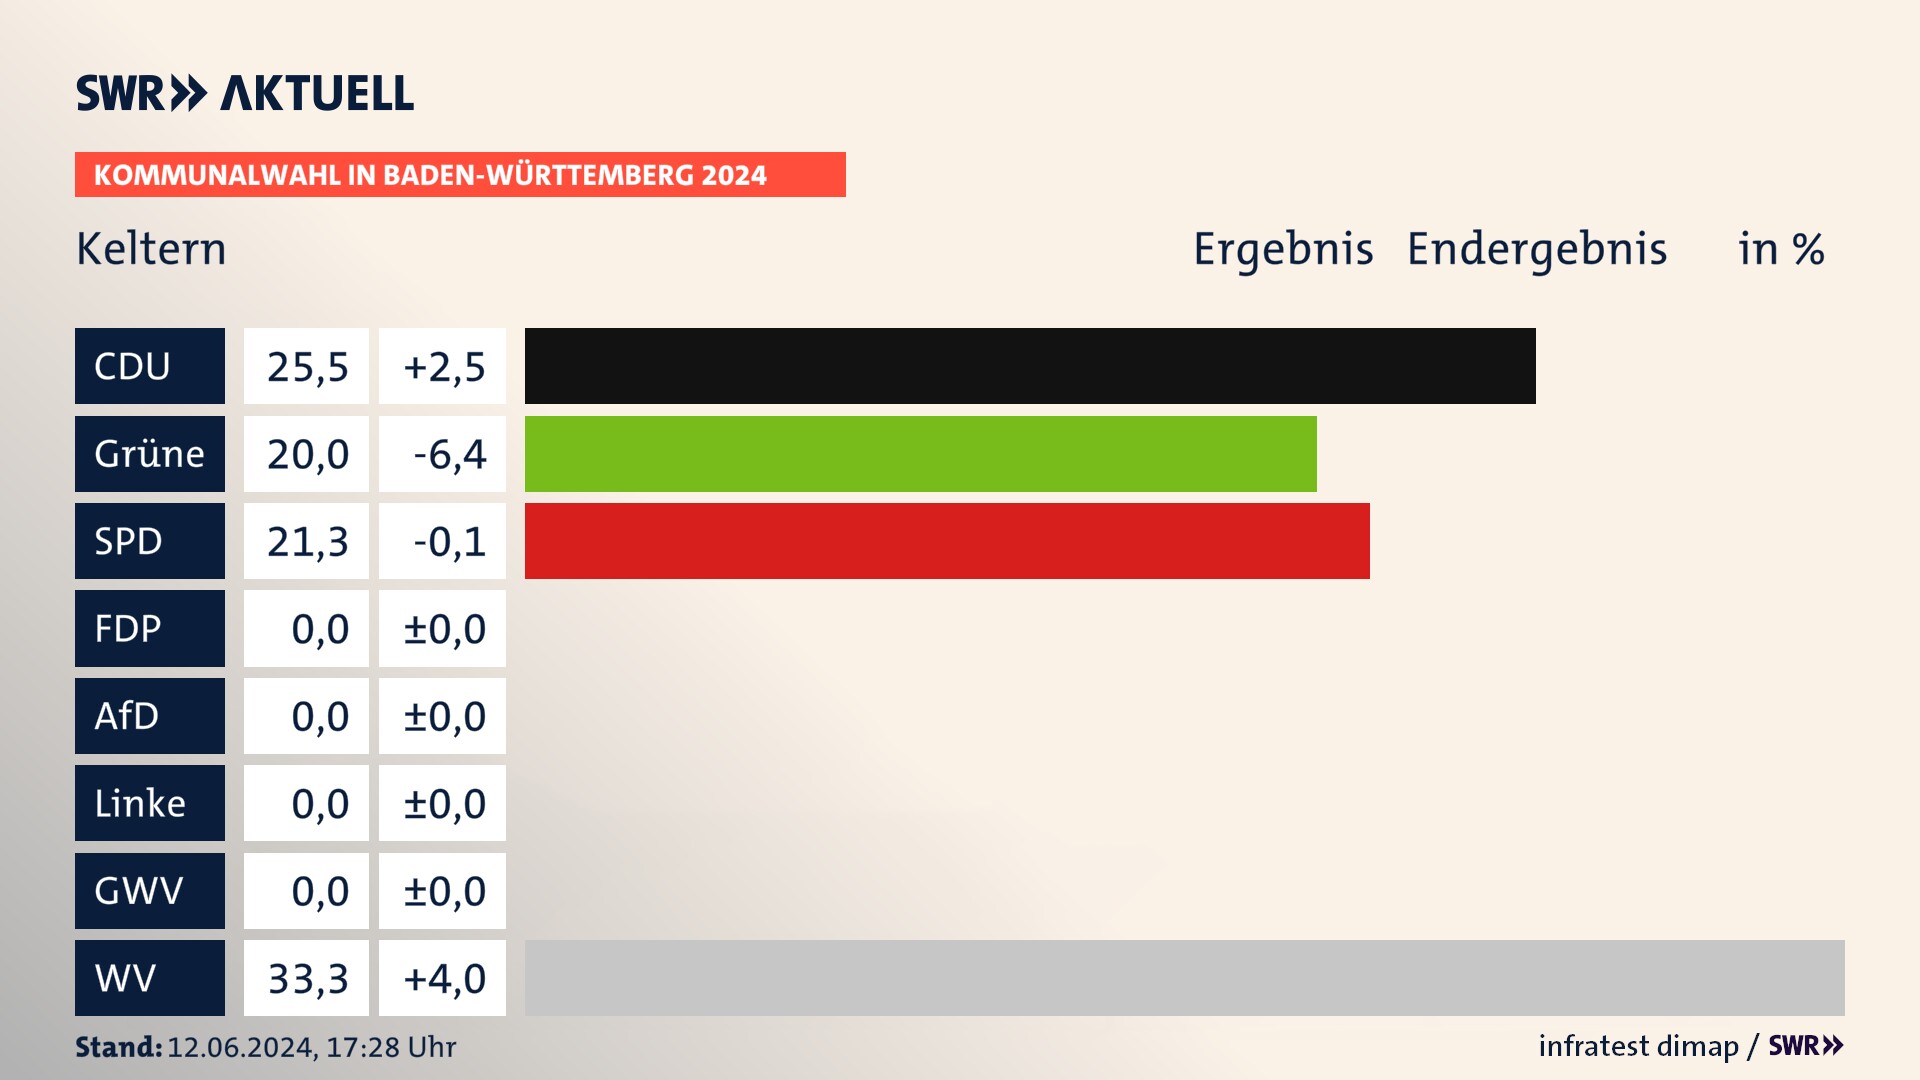 Kommunalwahl 2024 Endergebnis Zweitstimme für Keltern. In Keltern erzielt die CDU 25,5 Prozent der gültigen  Stimmen. Die Grünen landen bei 20,0 Prozent. Die SPD erreicht 21,3 Prozent. Die Wählervereinigungen kommen auf 33,3 Prozent.